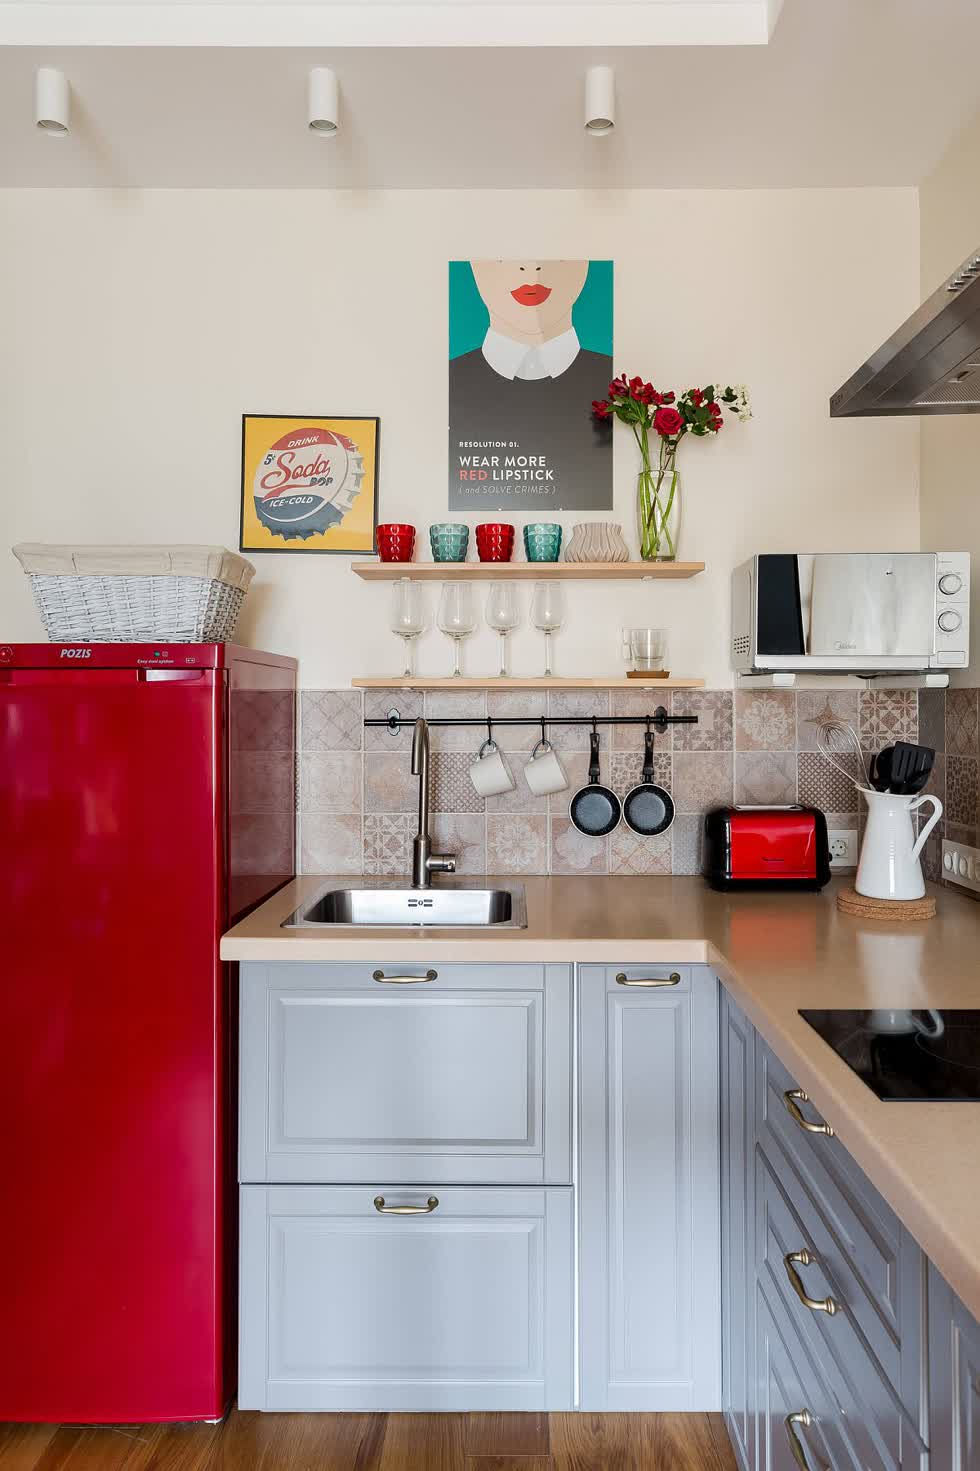   Tận dụng không gian góc trong căn bếp nhỏ với một chút màu đỏ.  